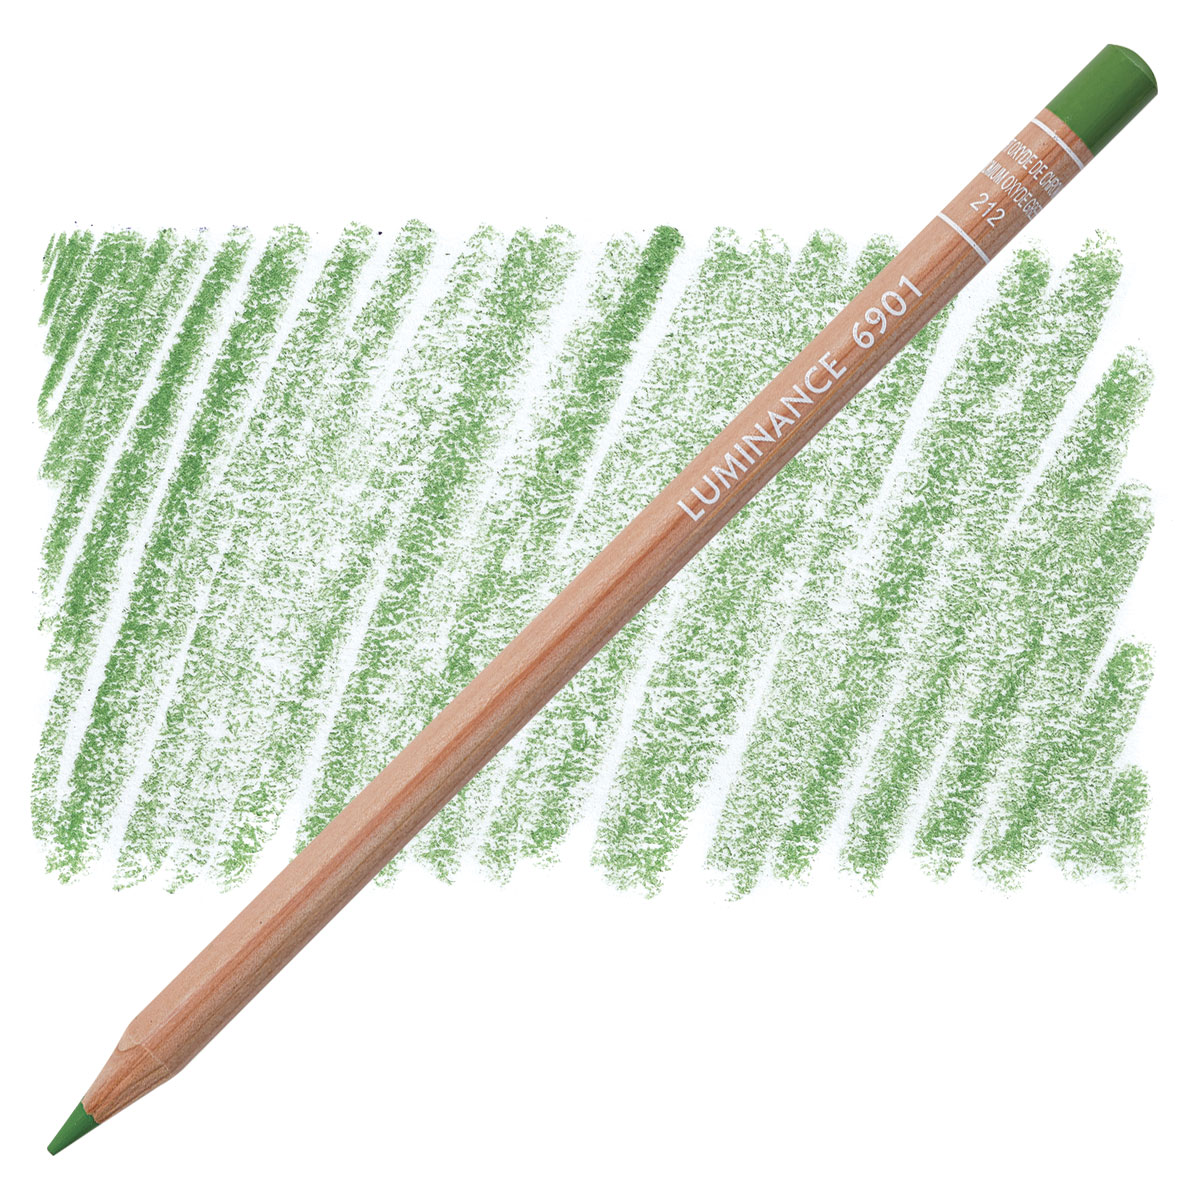 Caran d'Ache Luminance Colored Pencil - Cobalt Green 